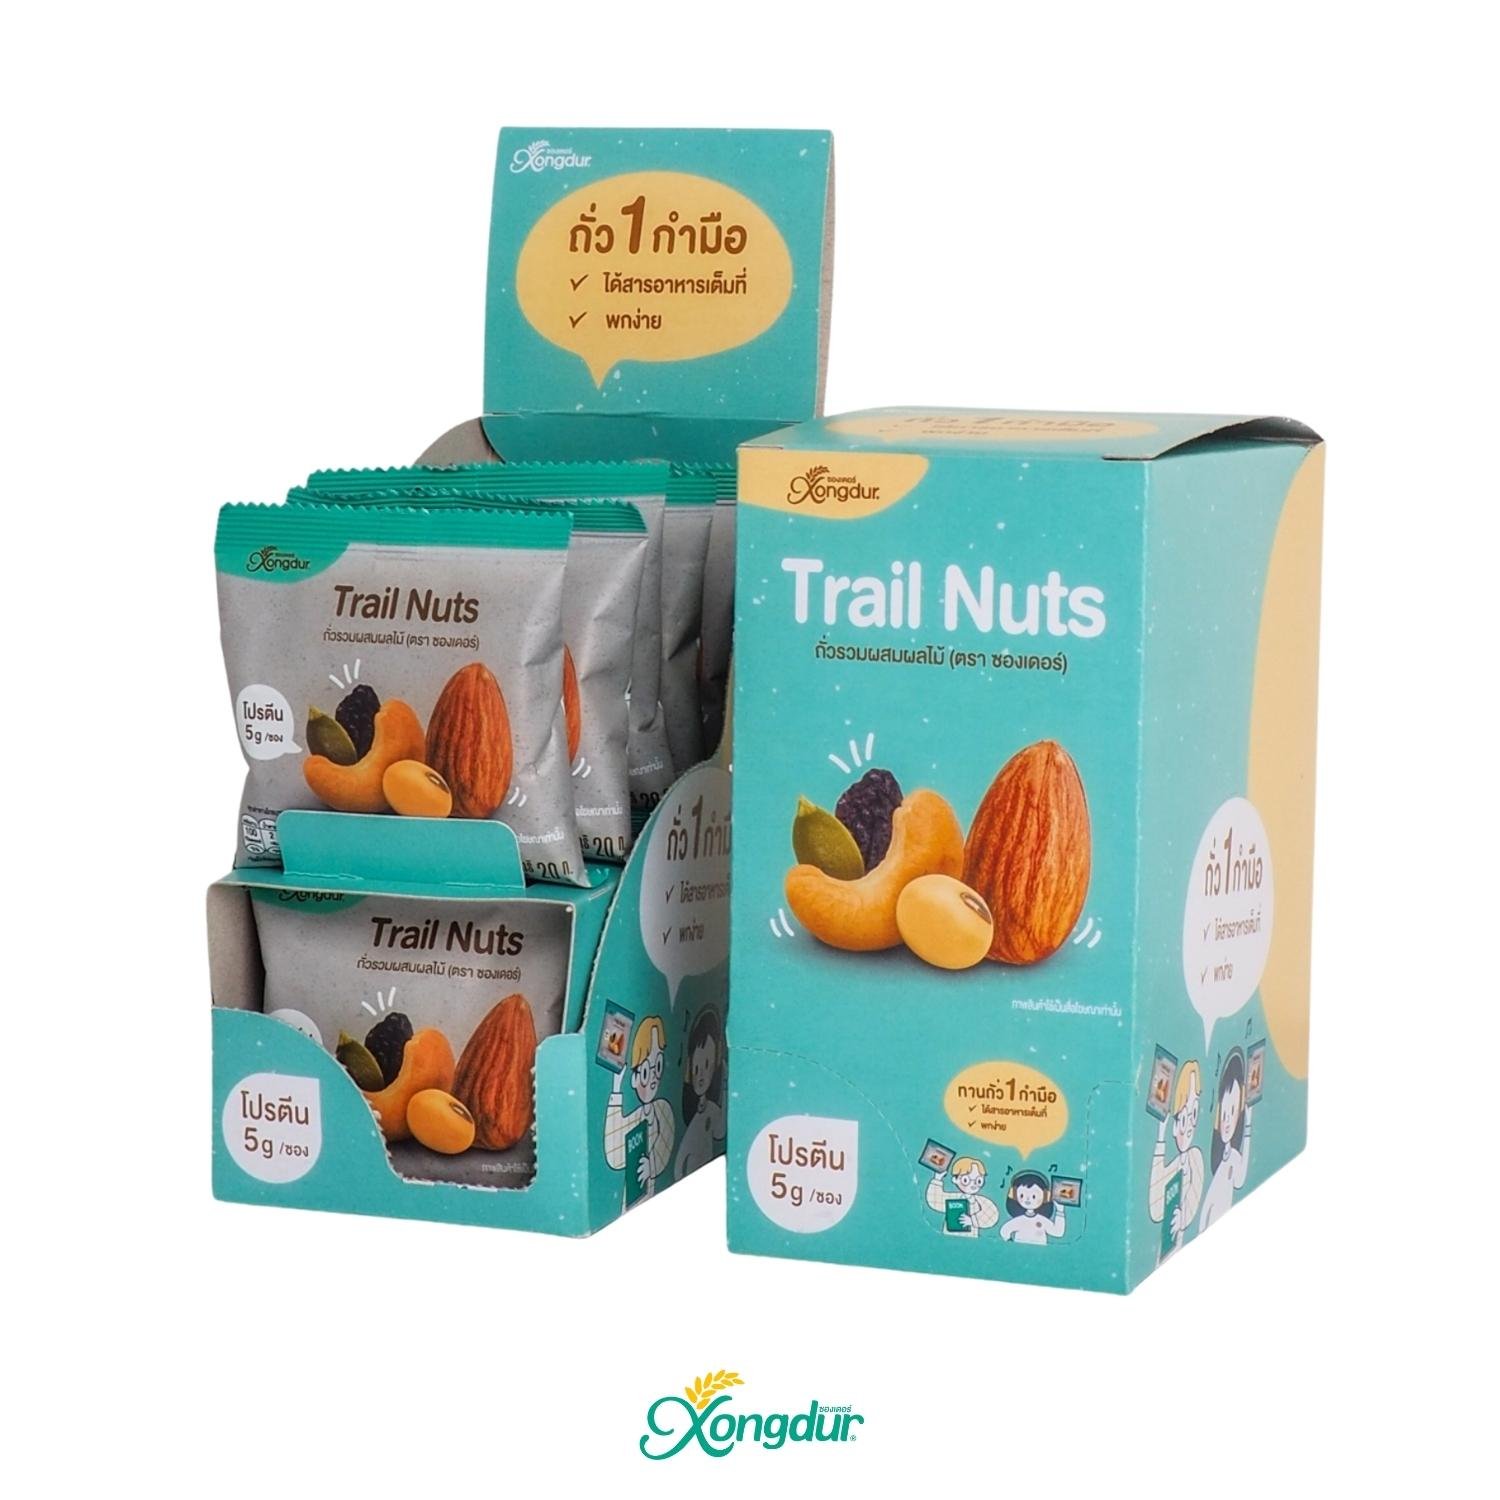 Trail Nuts